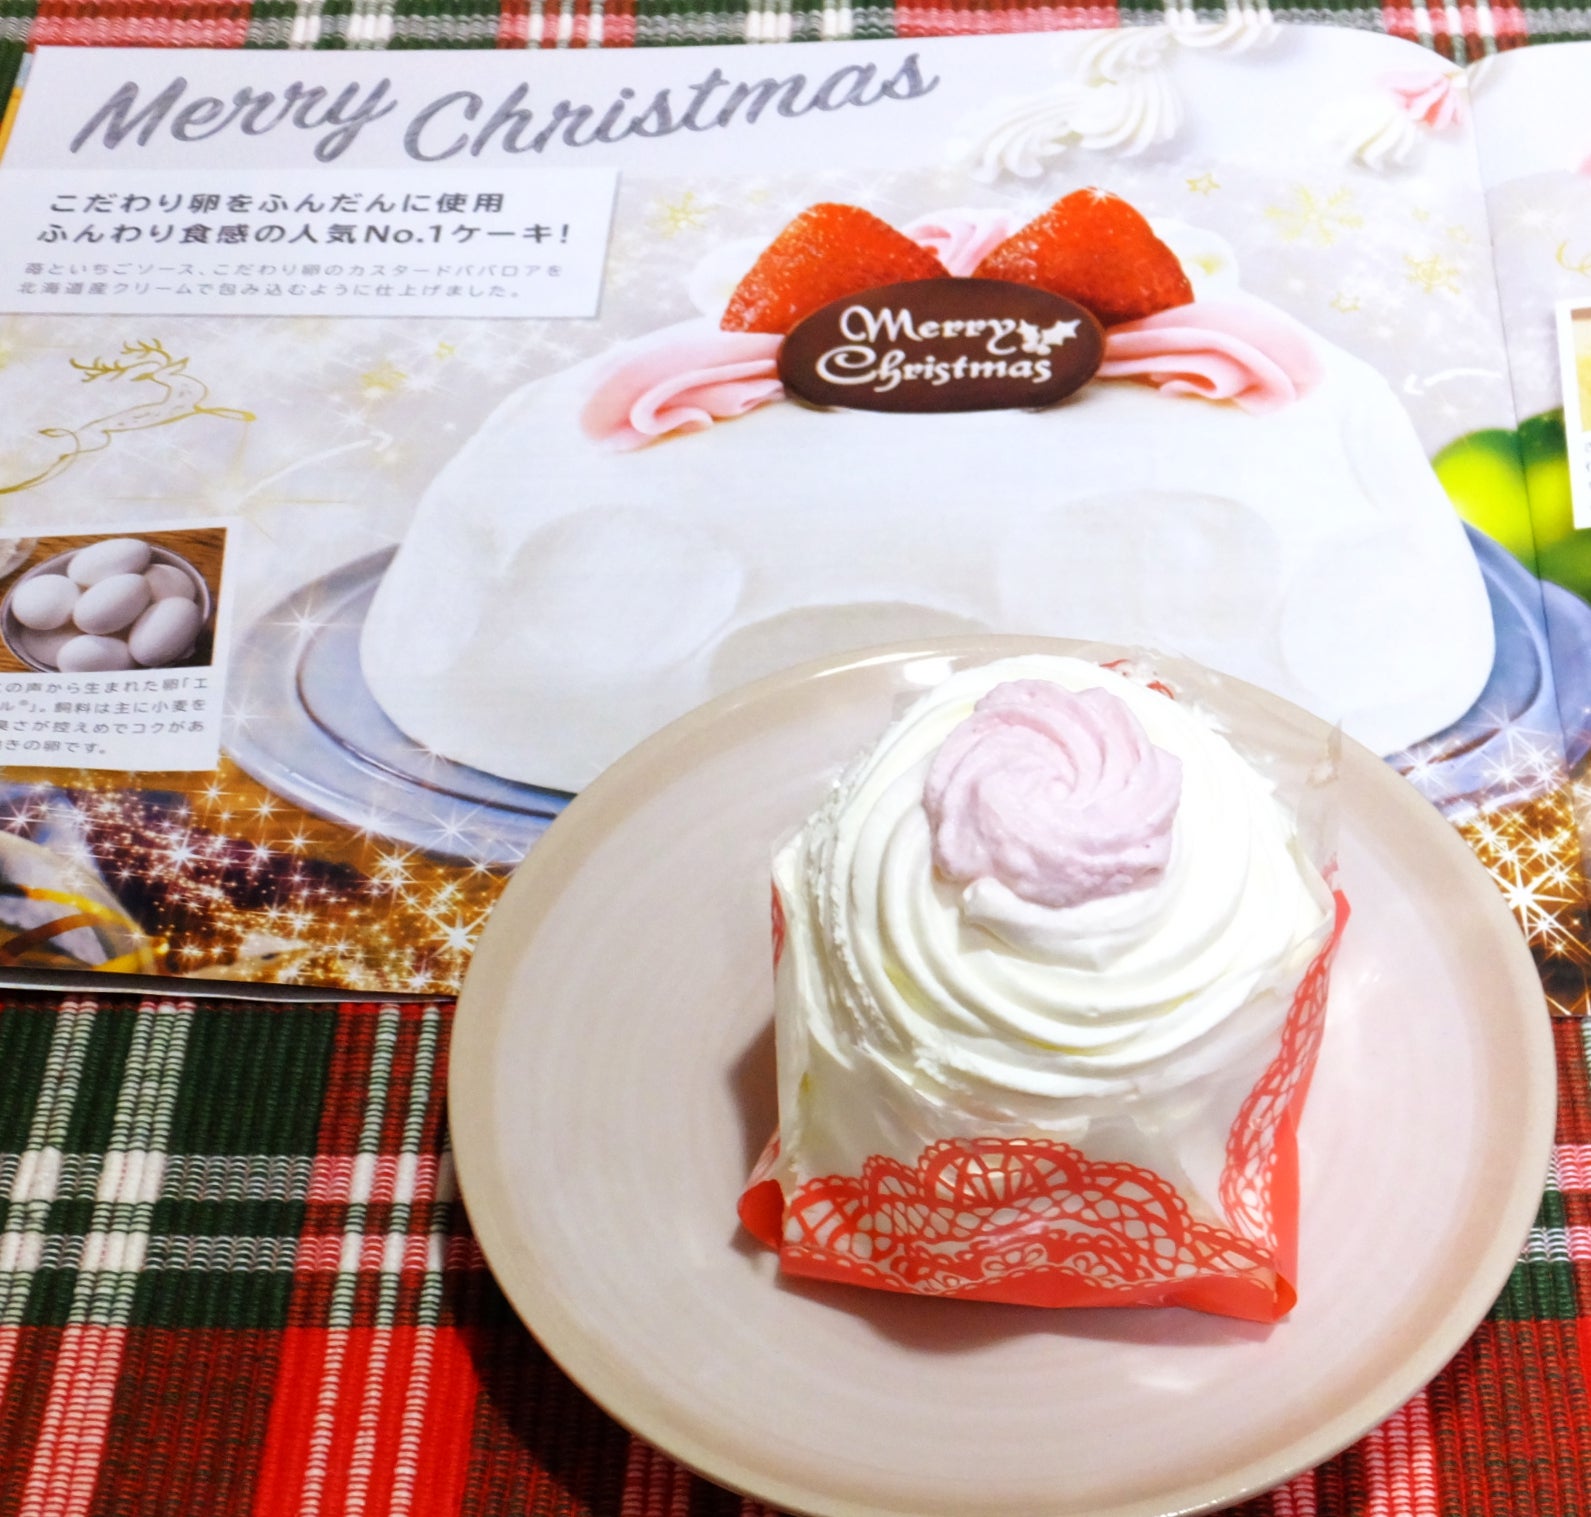 セブン イレブンの定番クリスマスケーキ かまくら のミニサイズ ミニかまくら スノーフレーク のブログ